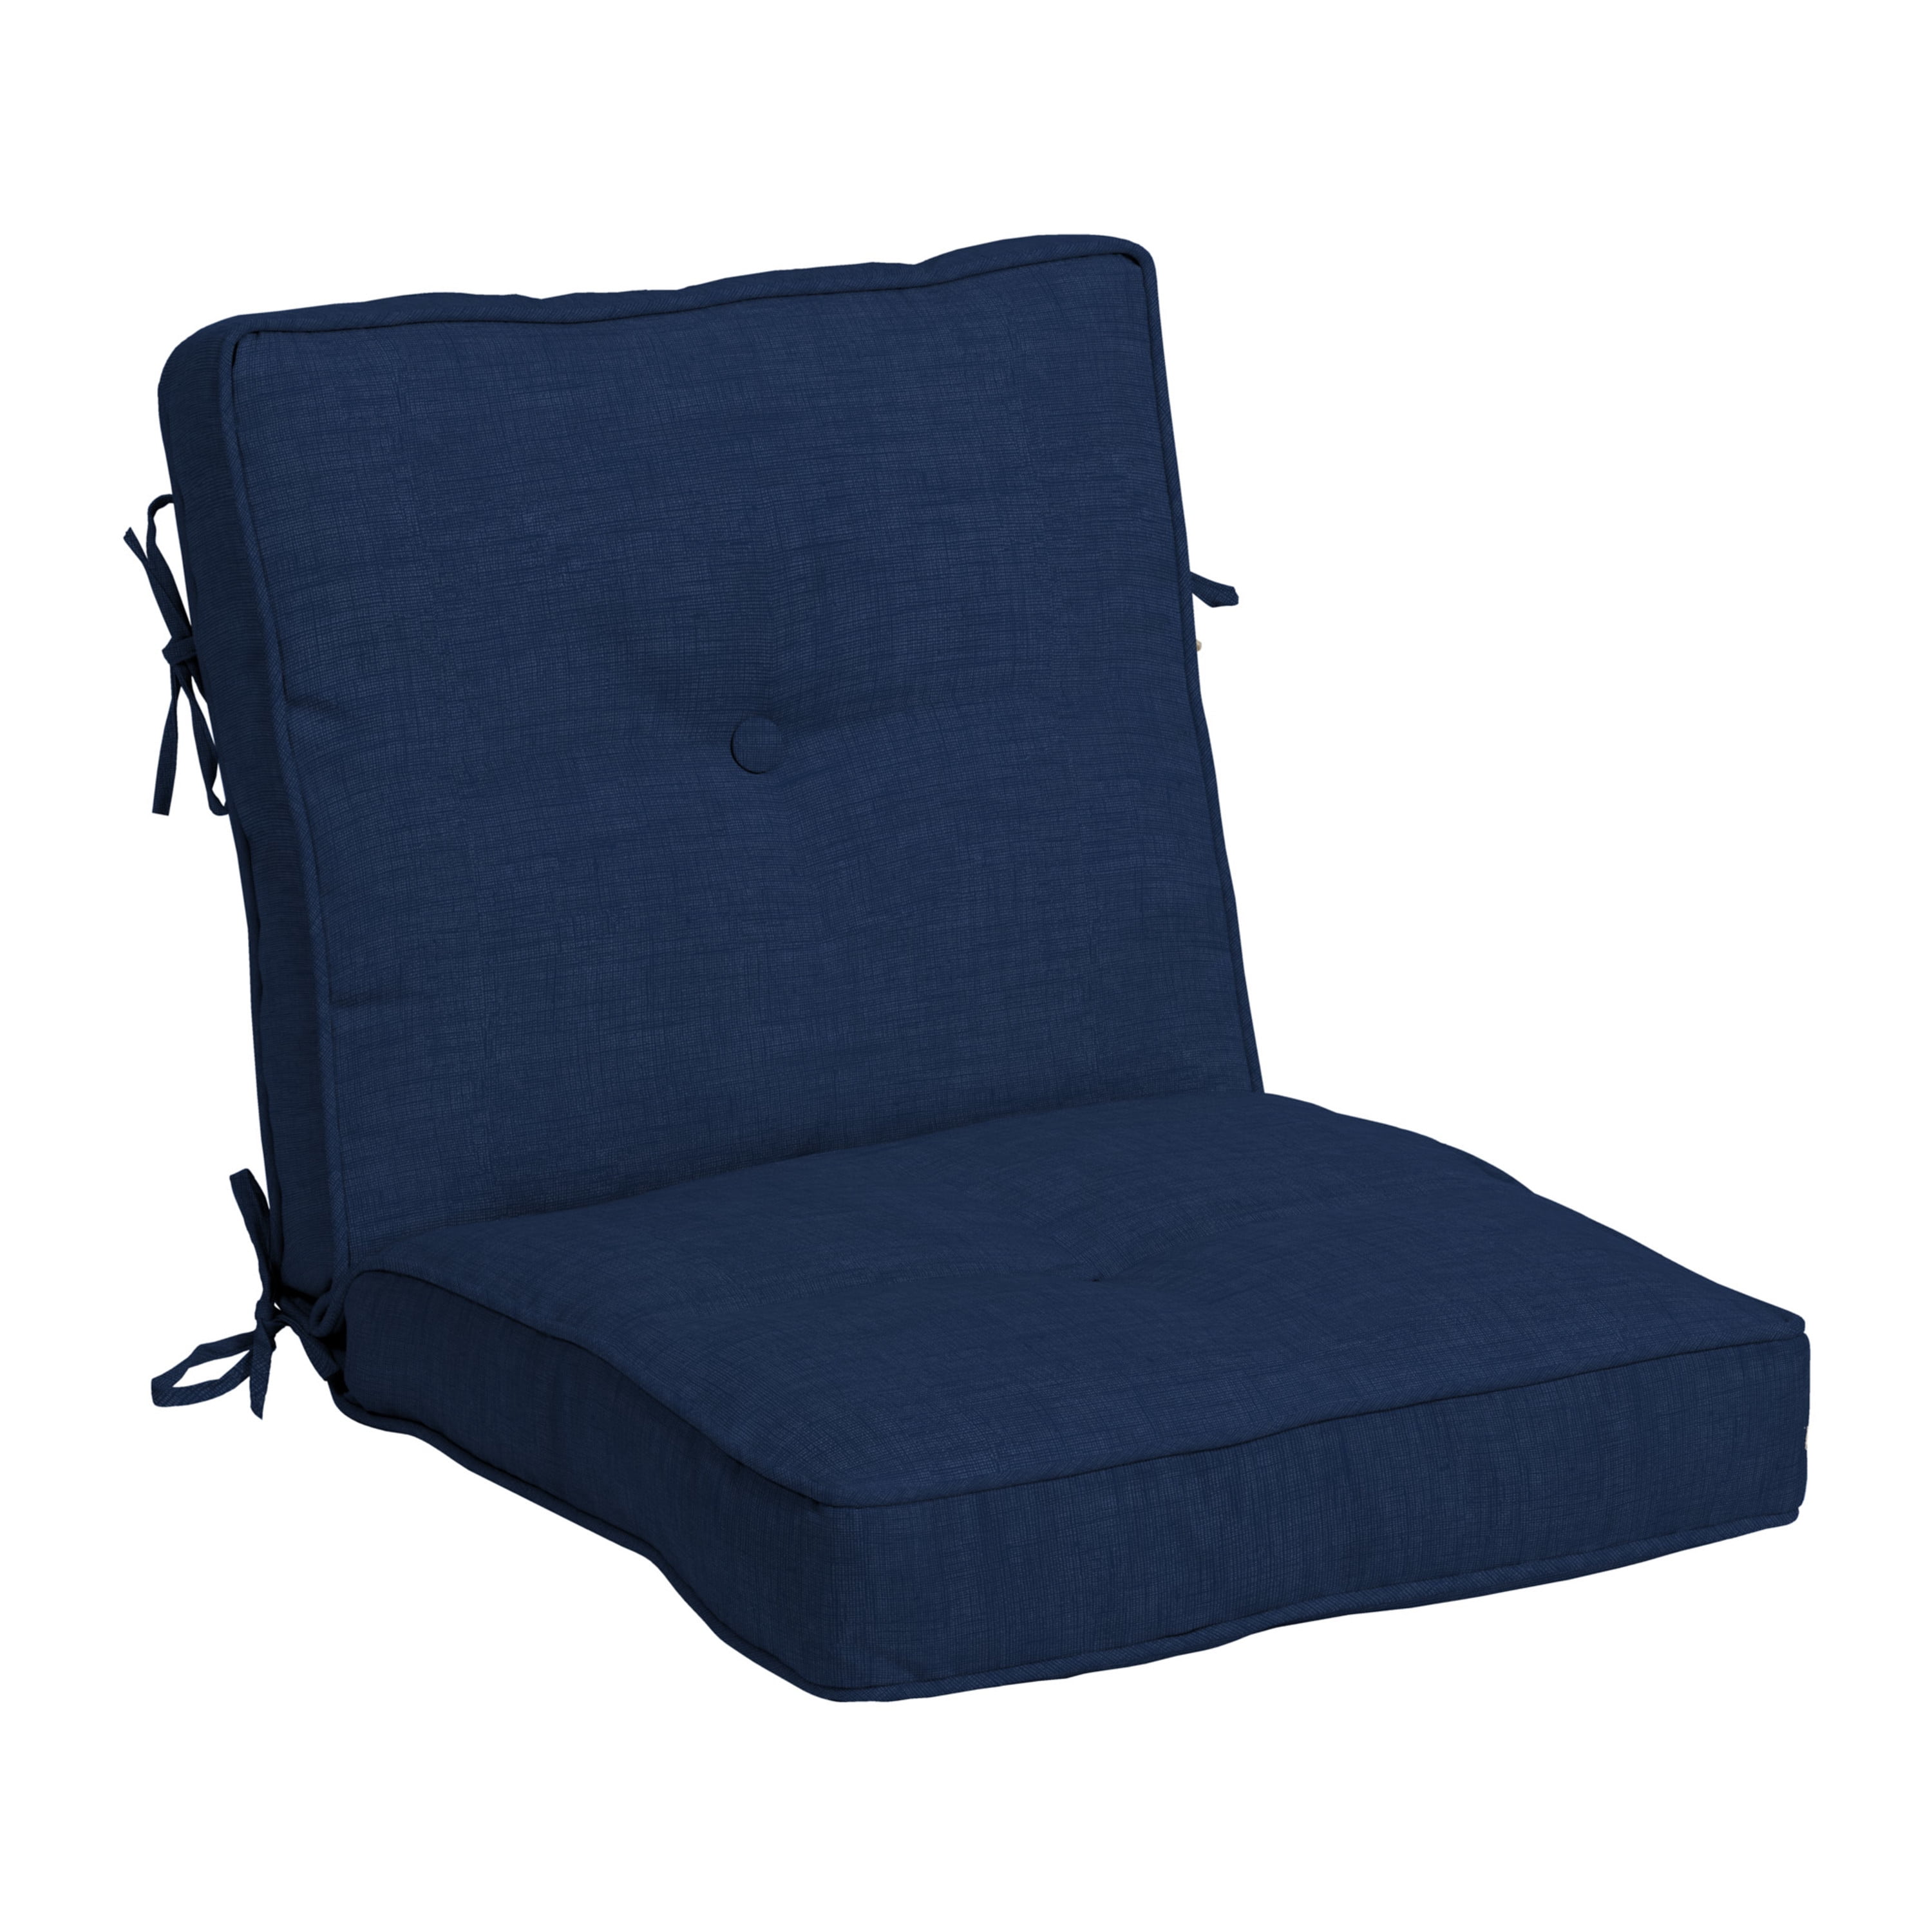 Will a Chair Cushion Restuff Work? —